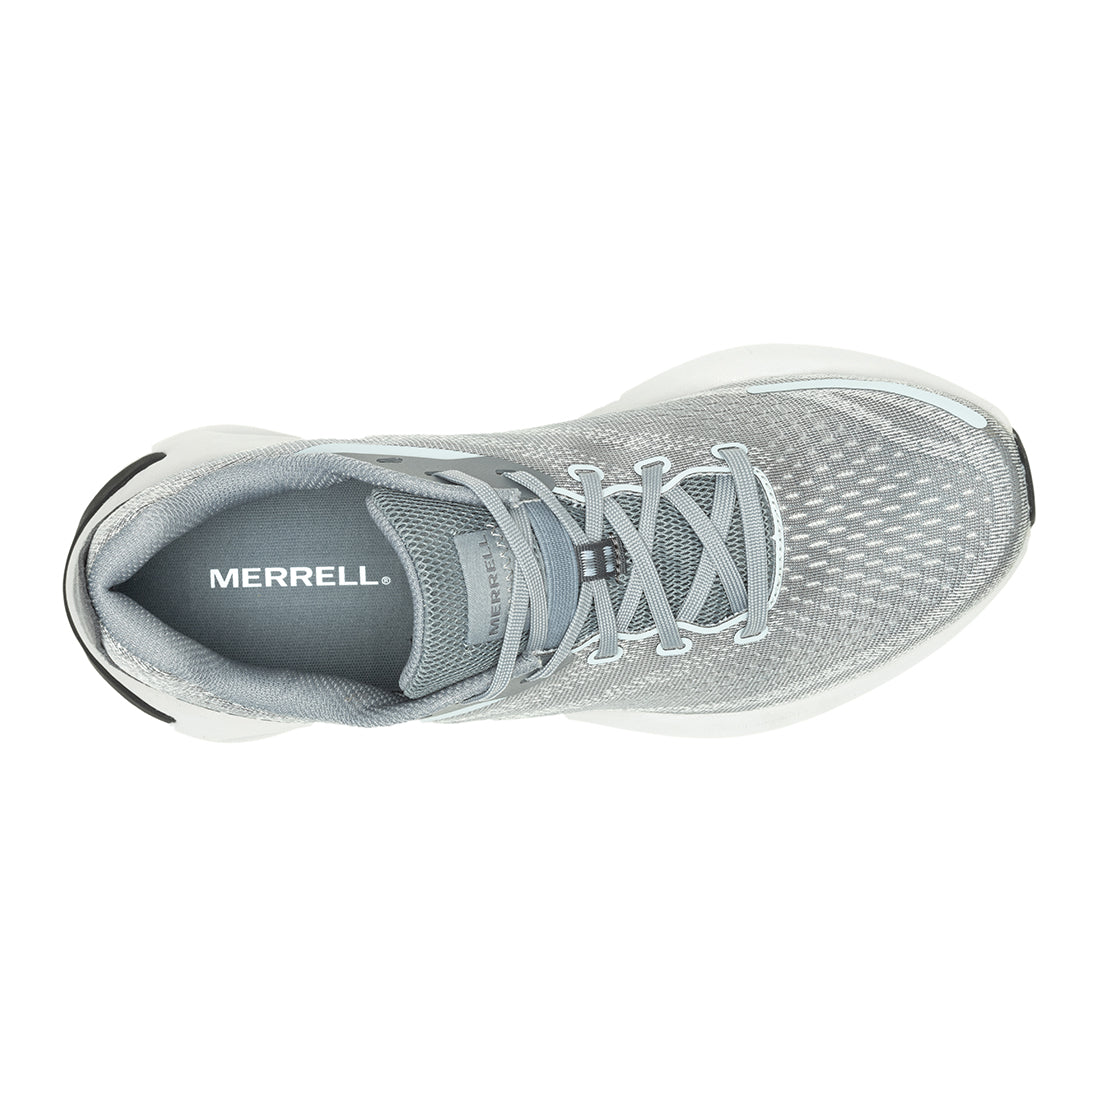 Morphlite - Monument Mens Trail Running Shoes